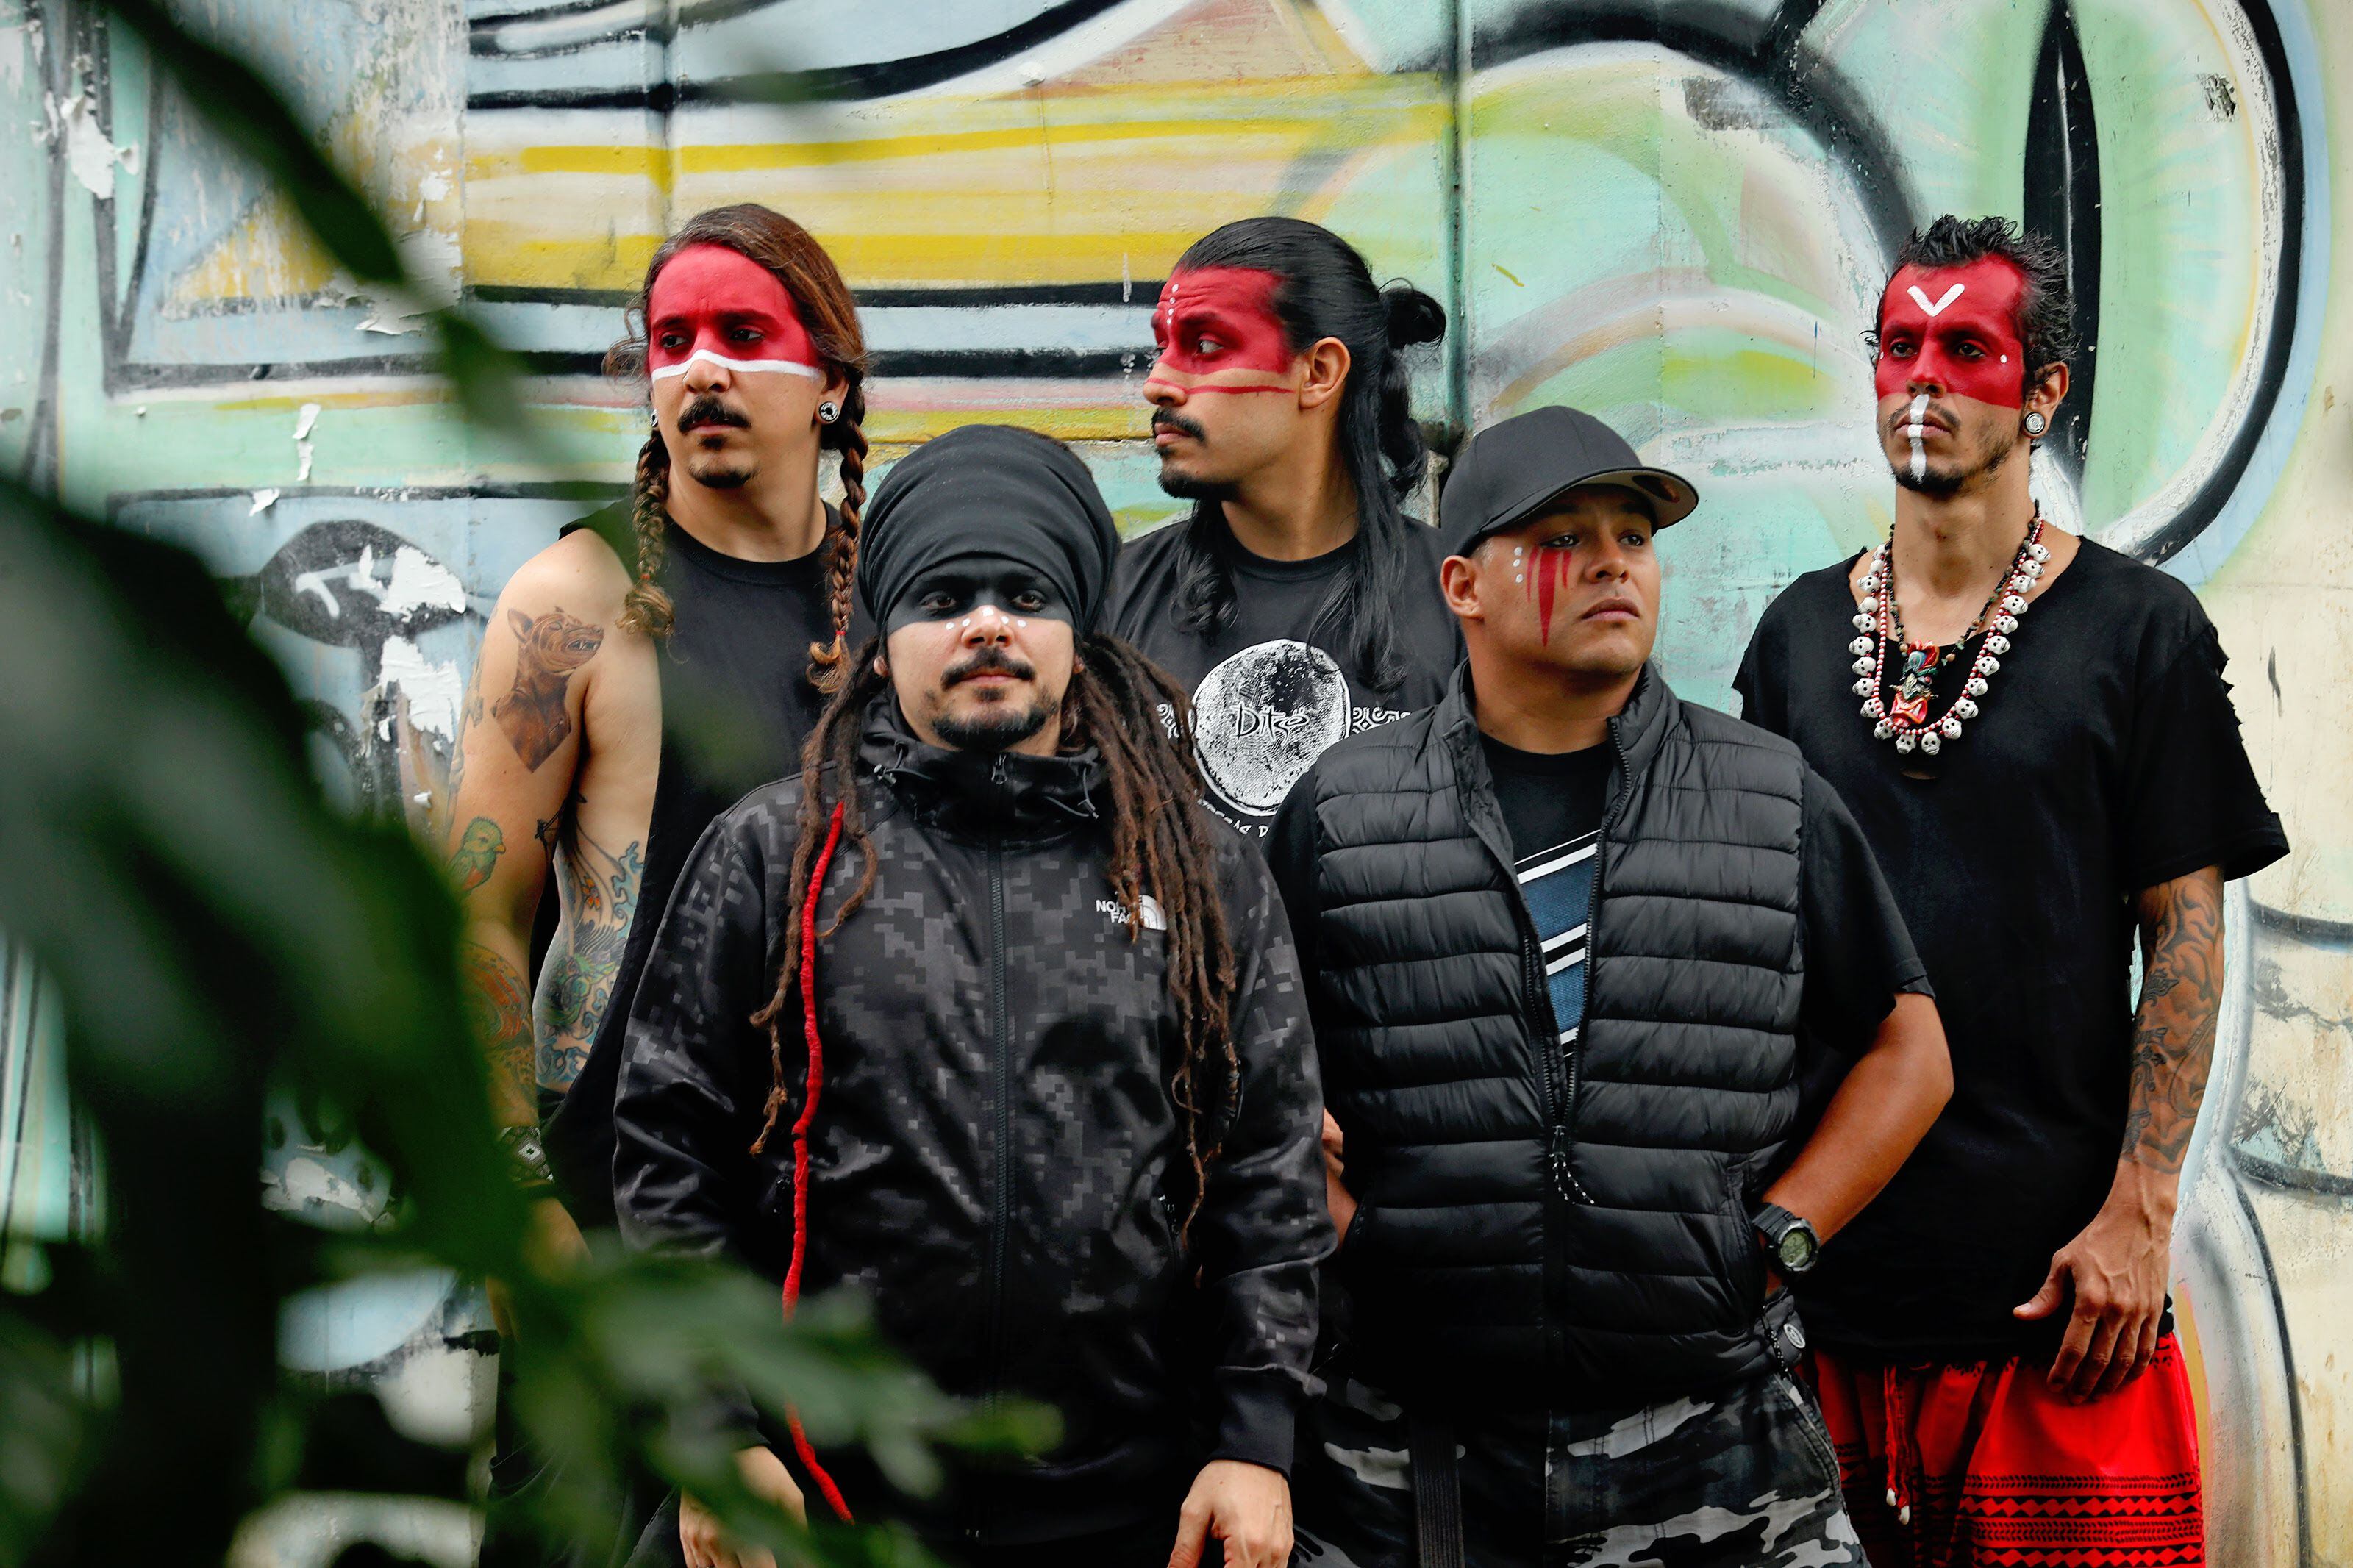 La banda costarricense Totem celebra sus 20 años de trayectoria al lado de su 'tribu', los fans que los han acompañado a lo largo del camino.